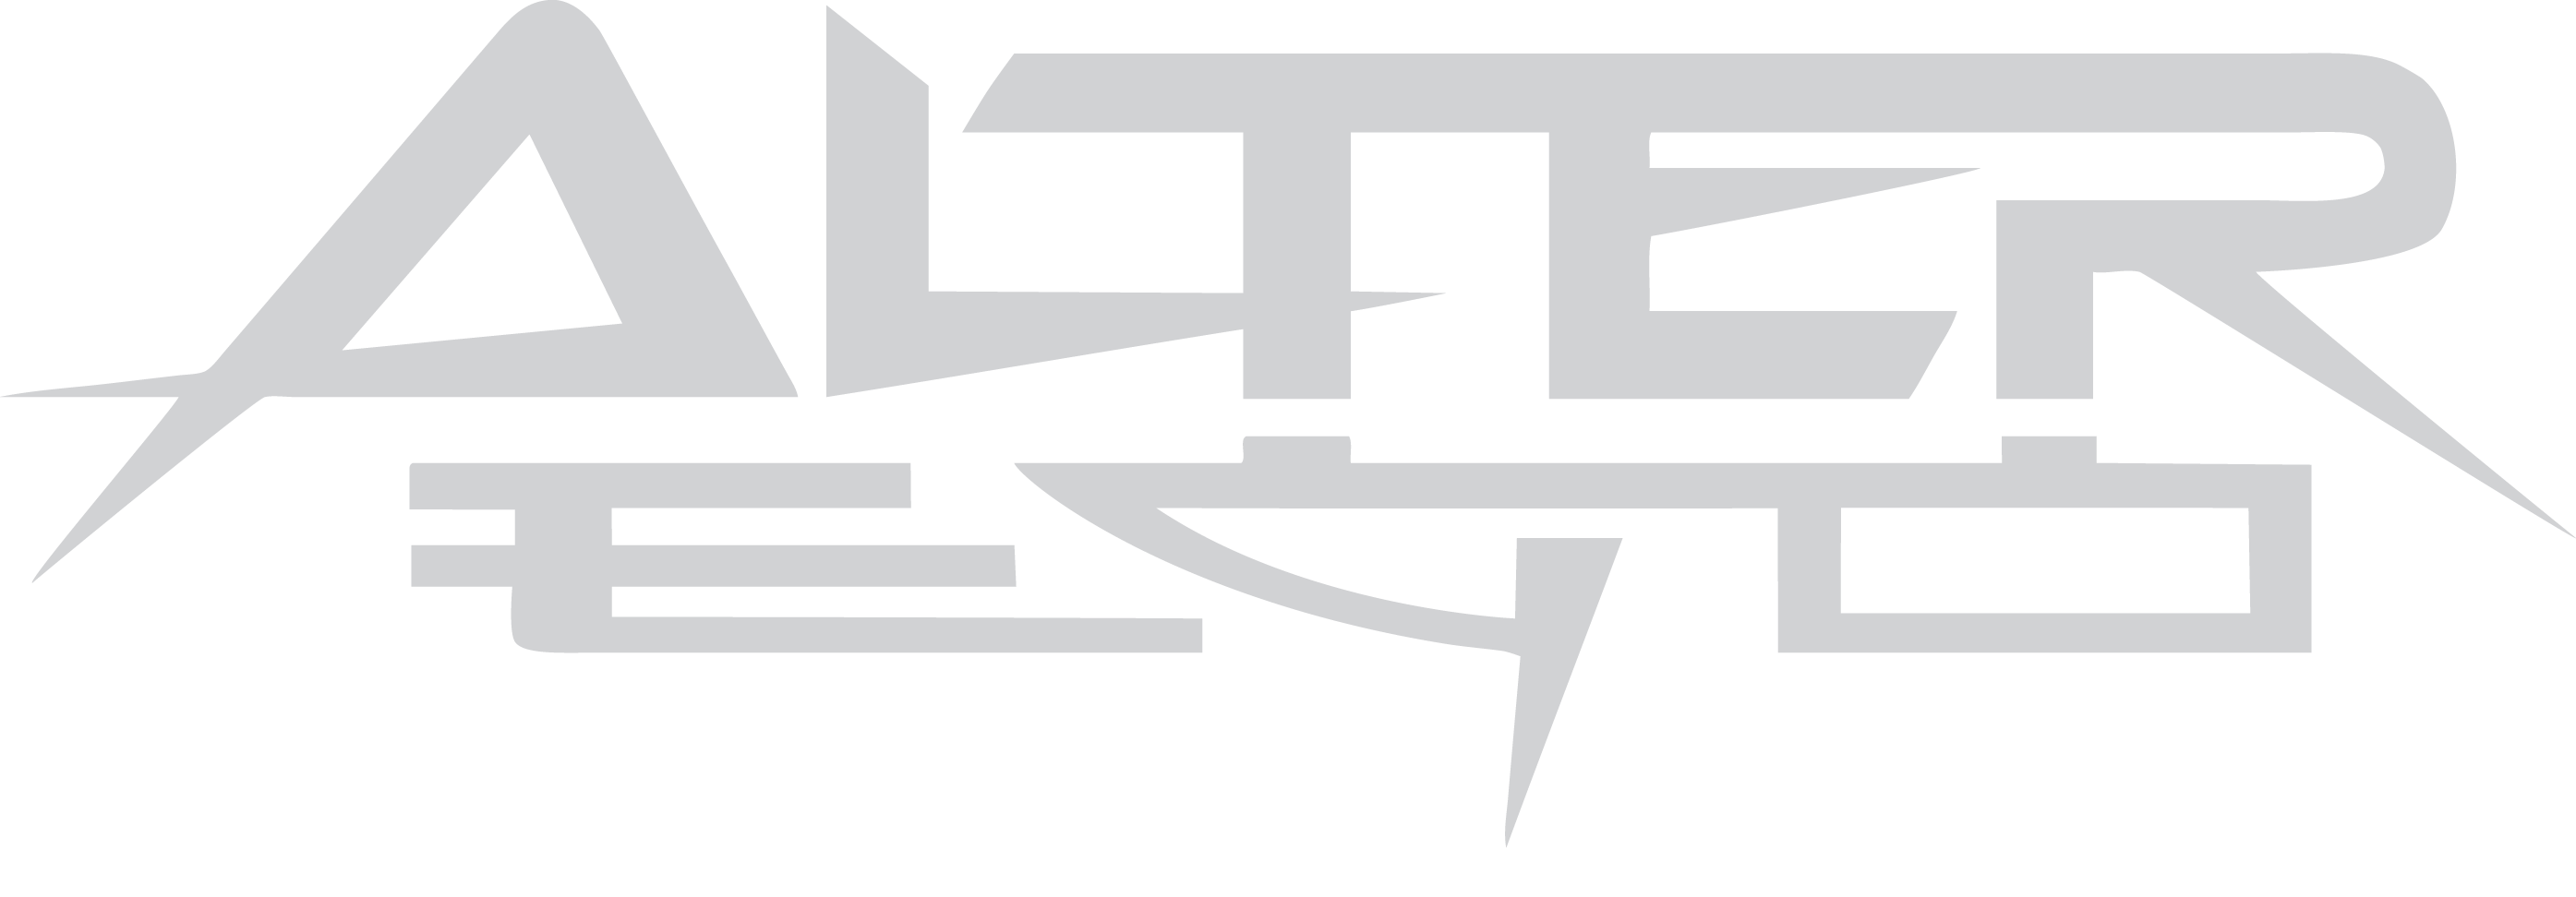 Logo Alter Ego PNG - 35227